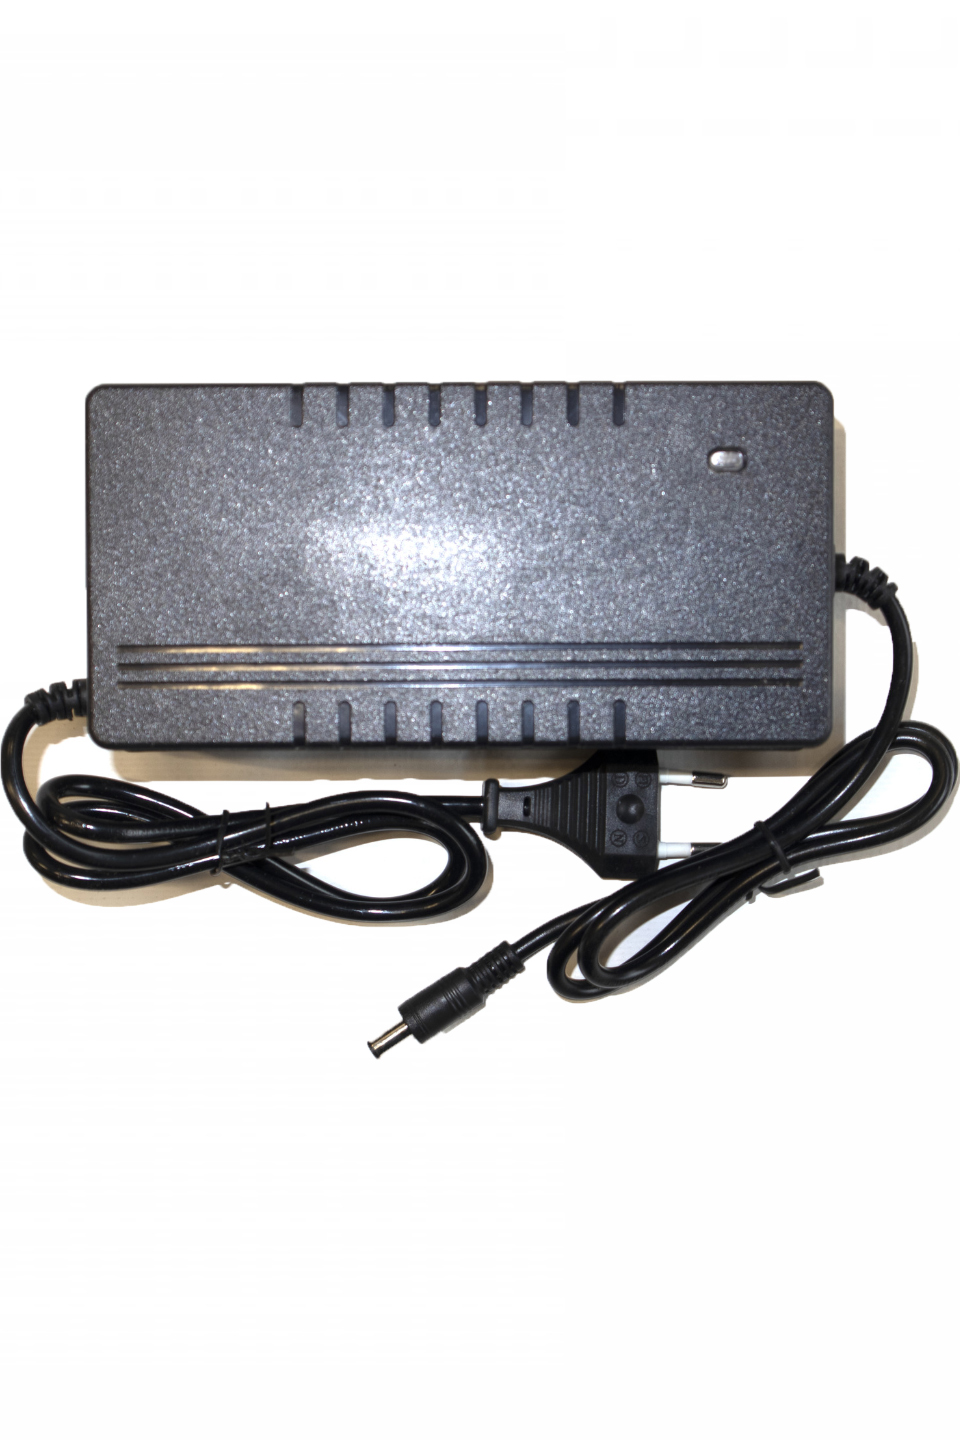 Зарядное устройство 48V 3A для литиевого аккумулятора - 480030